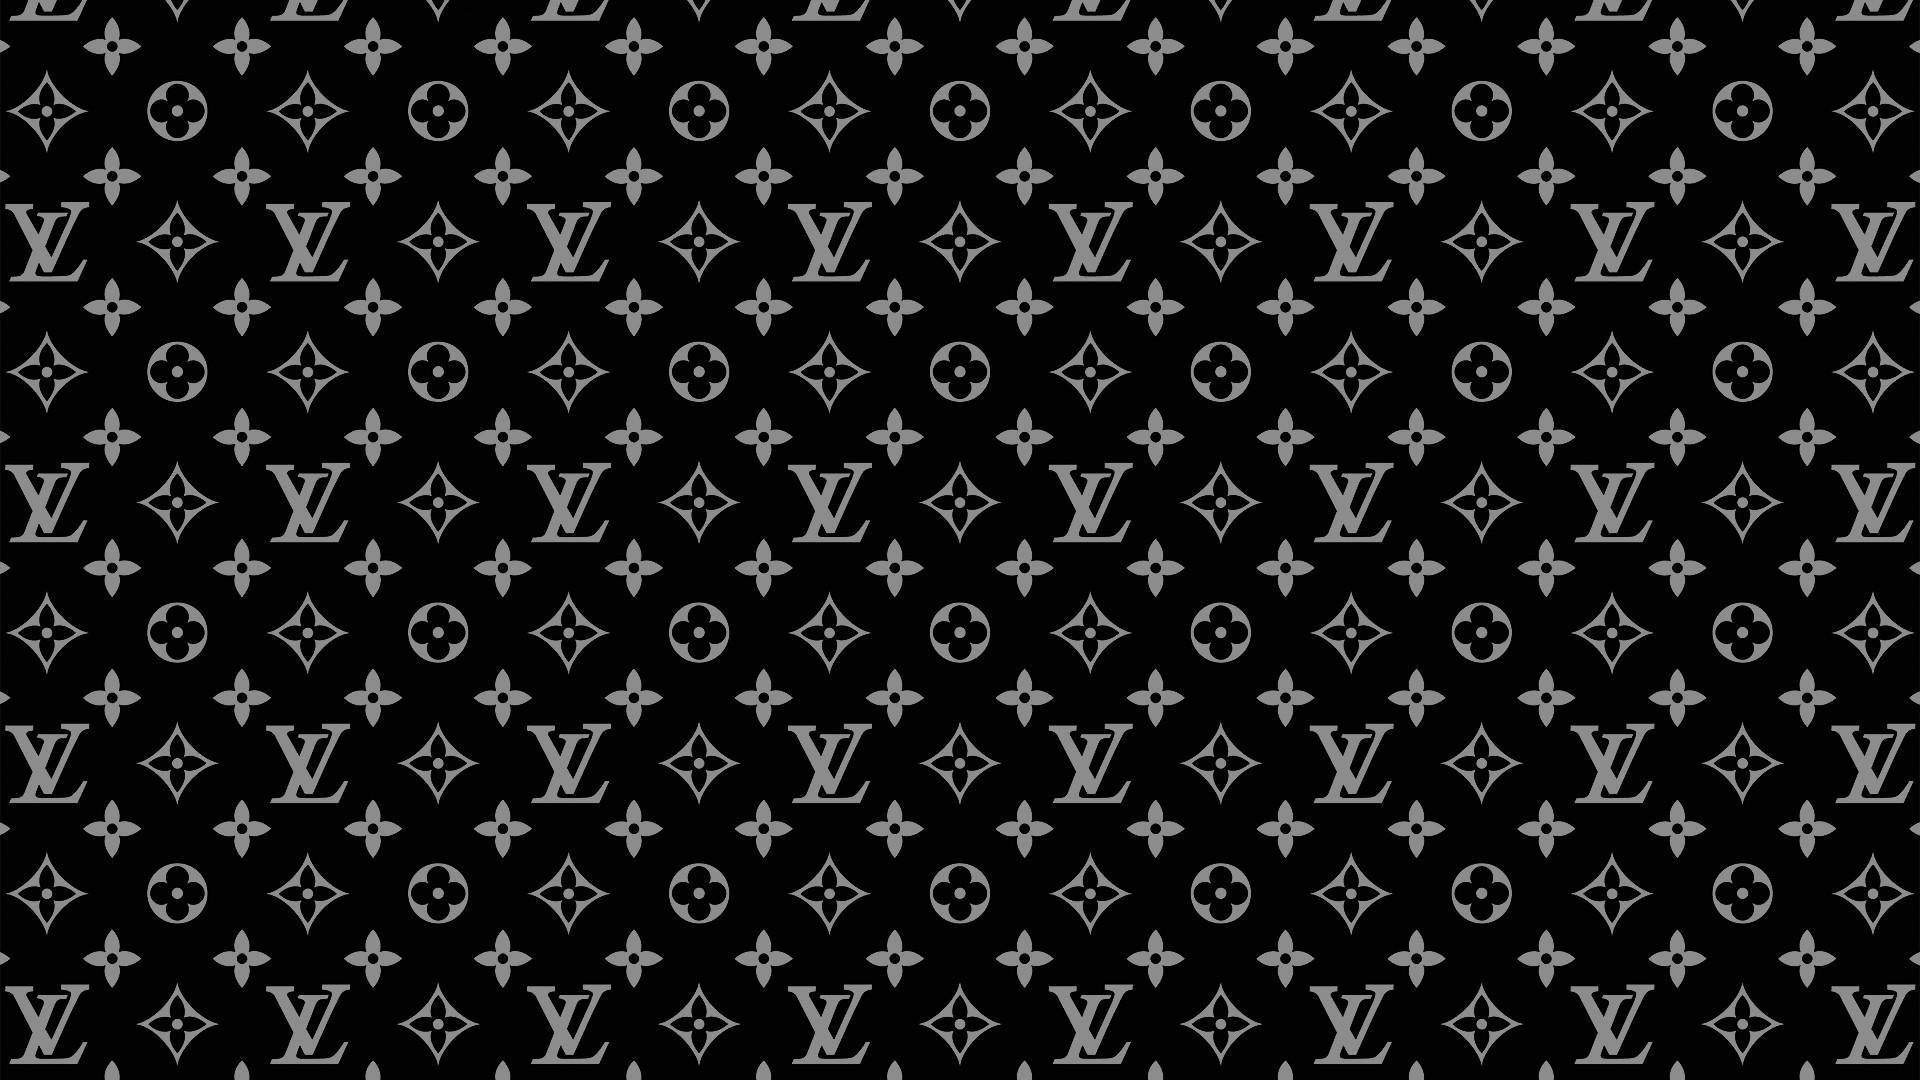 Supreme Logo Louis Vuitton HD Supreme Wallpapers, HD Wallpapers